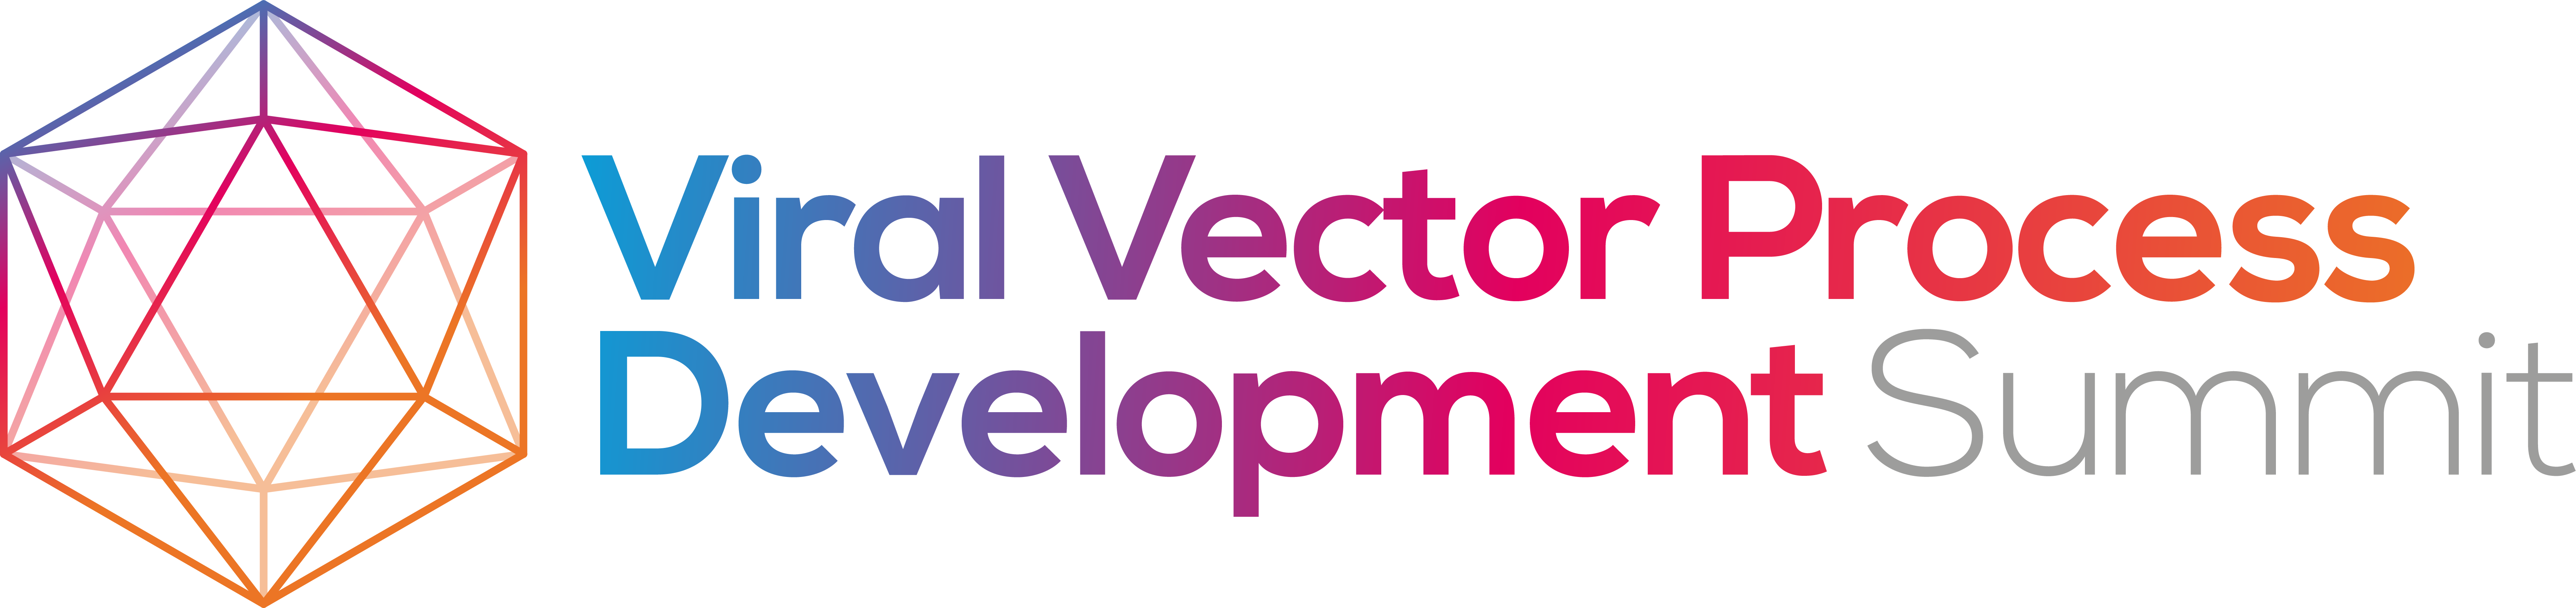 HW220825 31619 Viral Vector Process Development logo FINAL